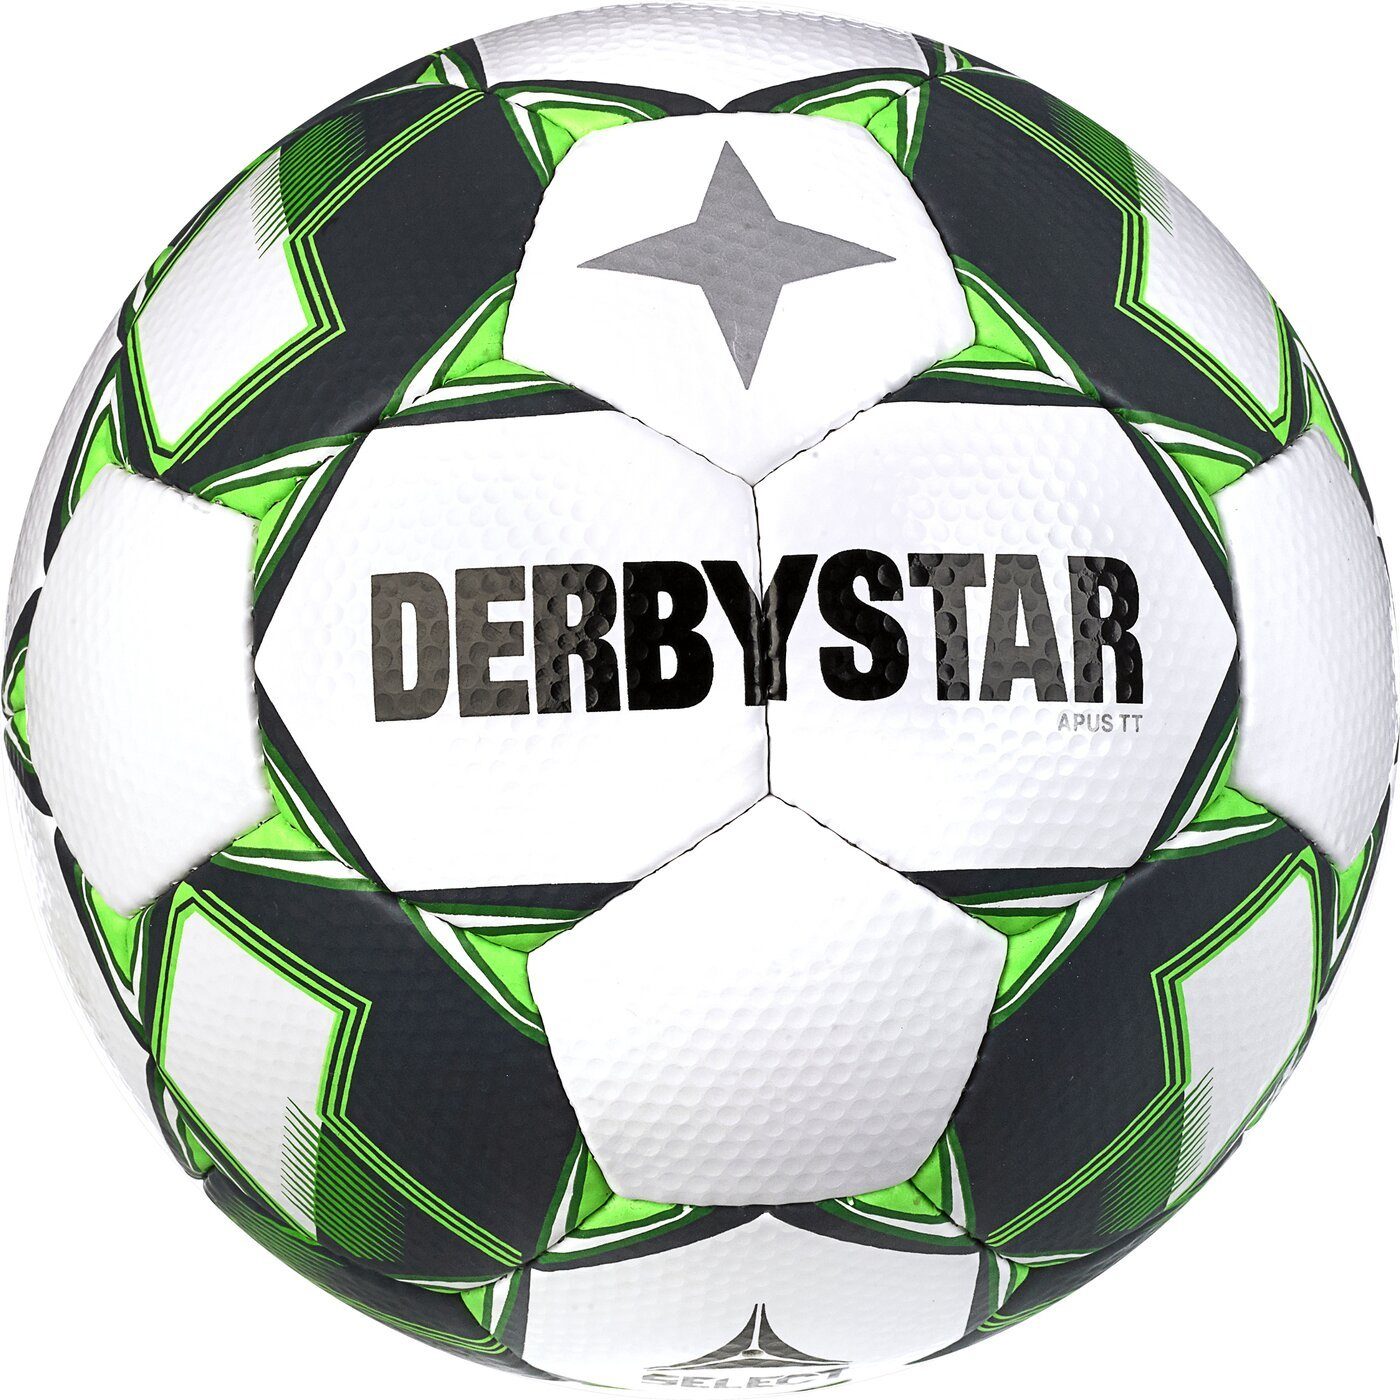 Derbystar Fußball Apus TT v23 GRÜN WEISS